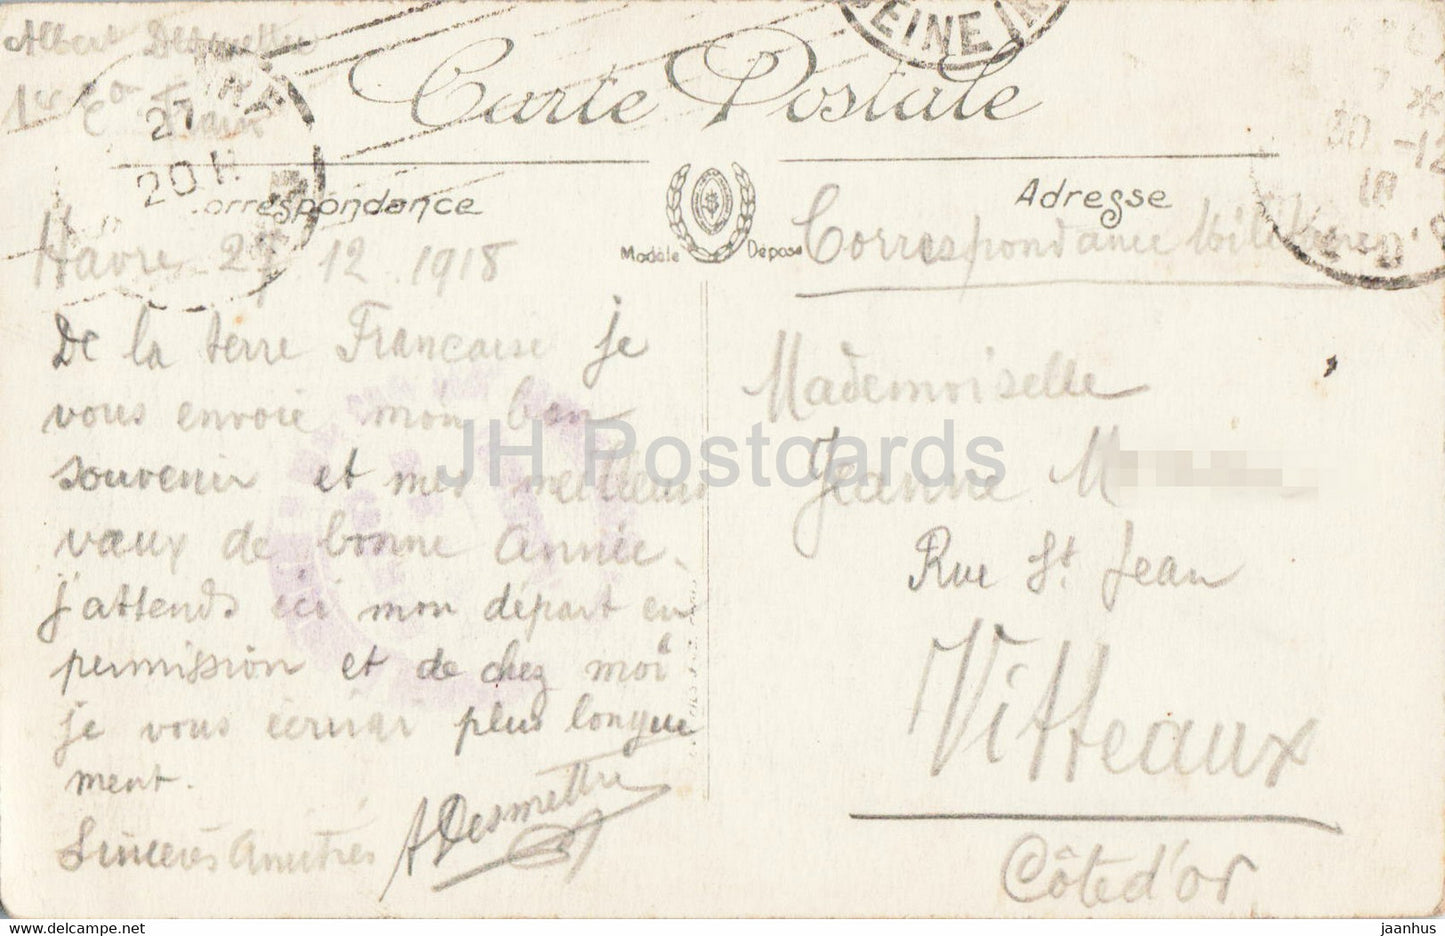 Sainte Adresse - L'Eglise de Ste Adresse - 182 - Kirche - Militärpost - alte Postkarte - Frankreich - gebraucht